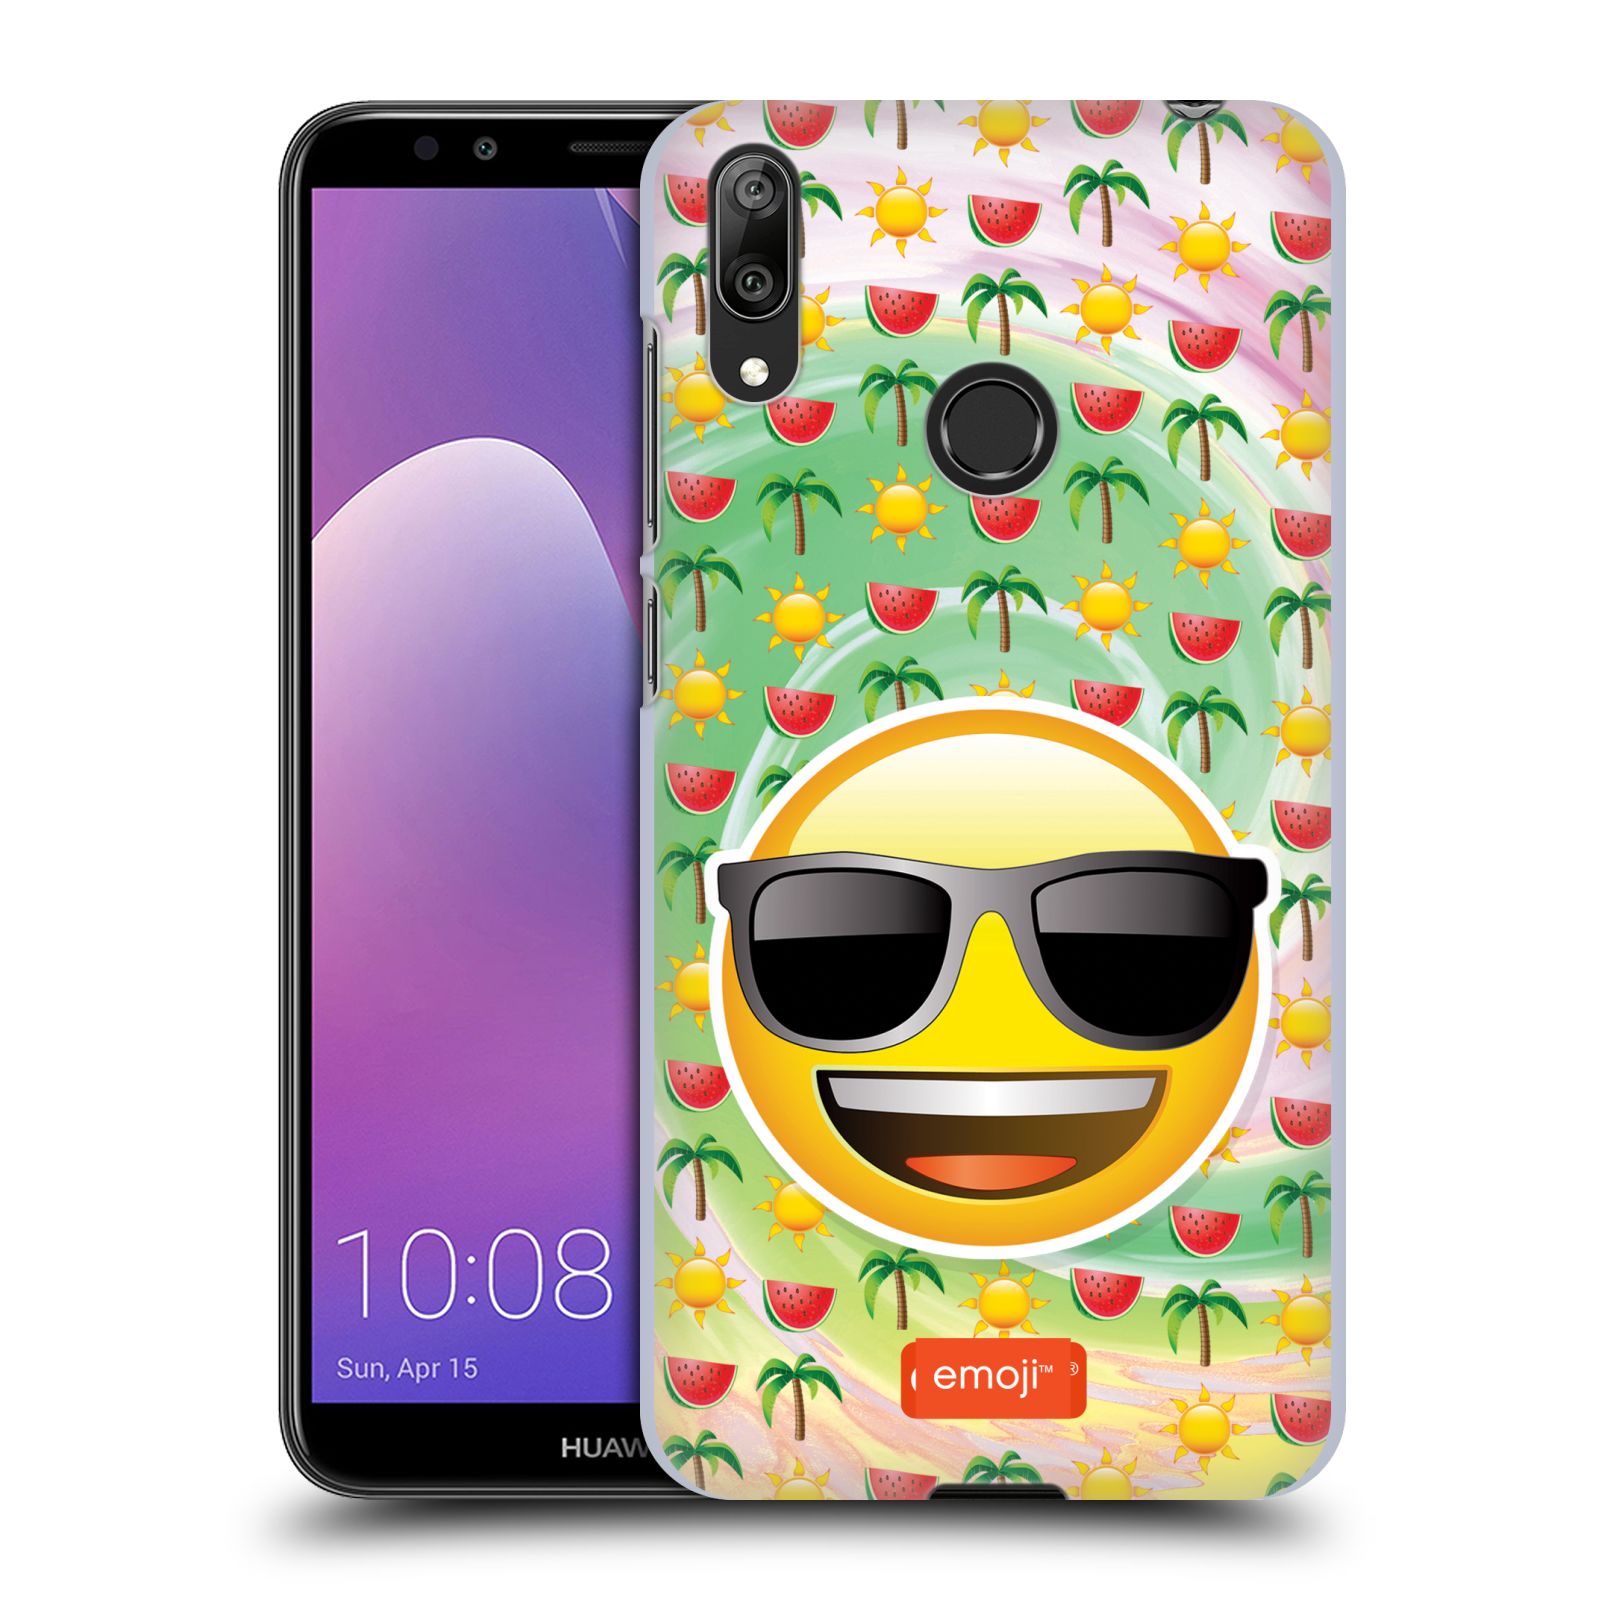 Pouzdro na mobil Huawei Y7 2019 - Head Case - smajlík oficiální kryt EMOJI velký smajlík léto